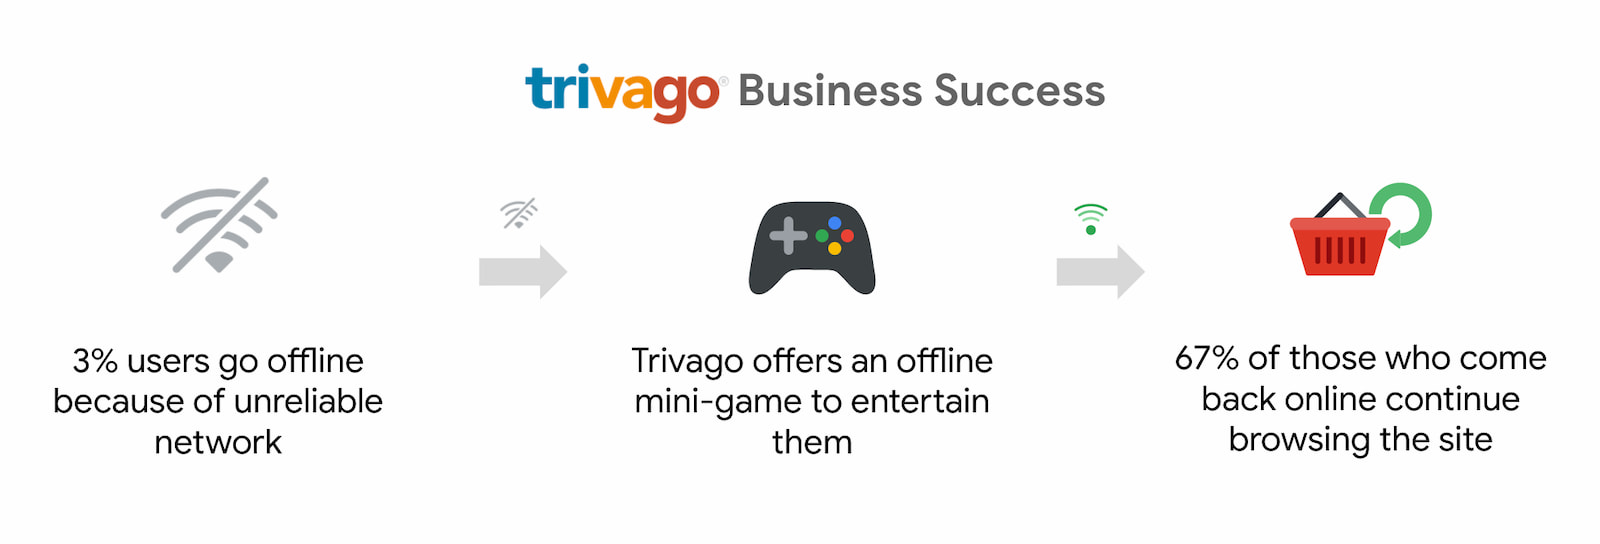 Trivago では、インターネットに戻ってきて閲覧を続けるユーザーが 67% 増加しました。